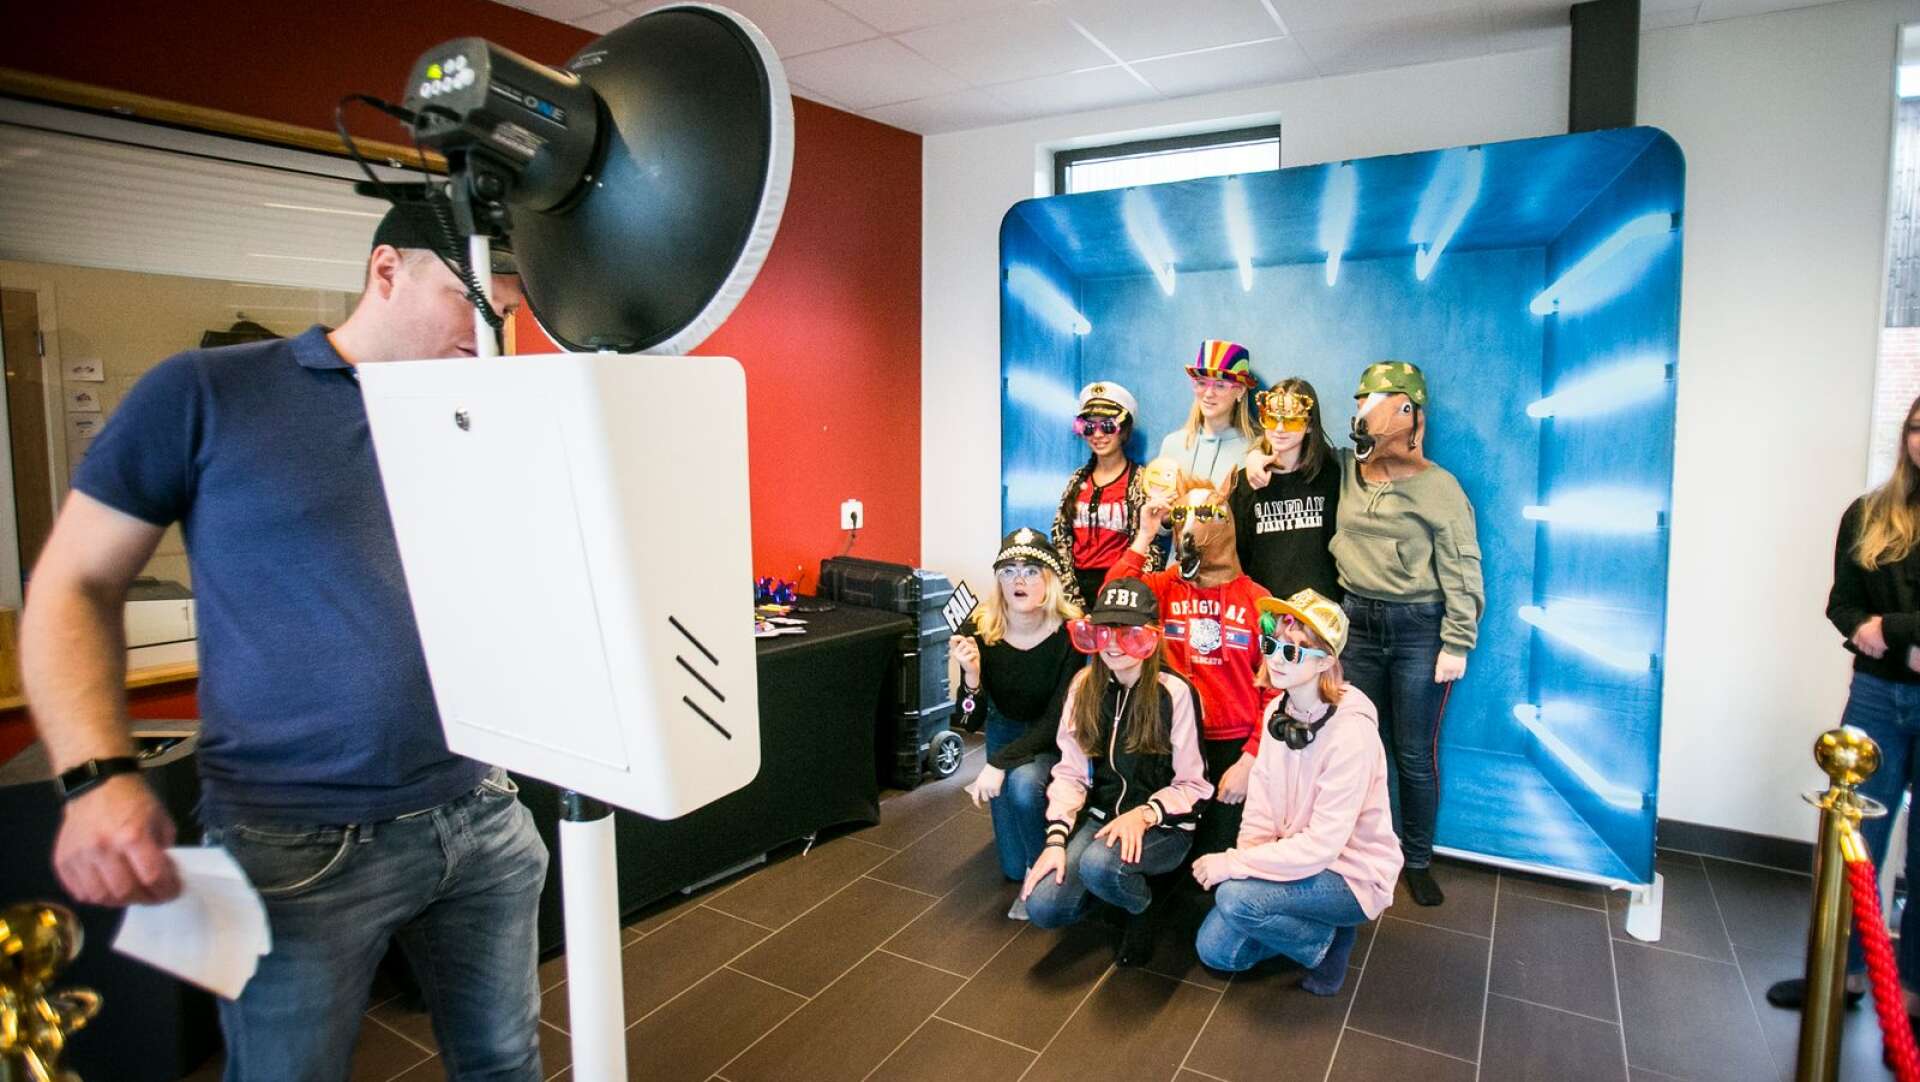 Fotografen Mattias Blomqvist var på plats på Sannerudsskolan i Kil och styrde inspirationsdagens fotobås.